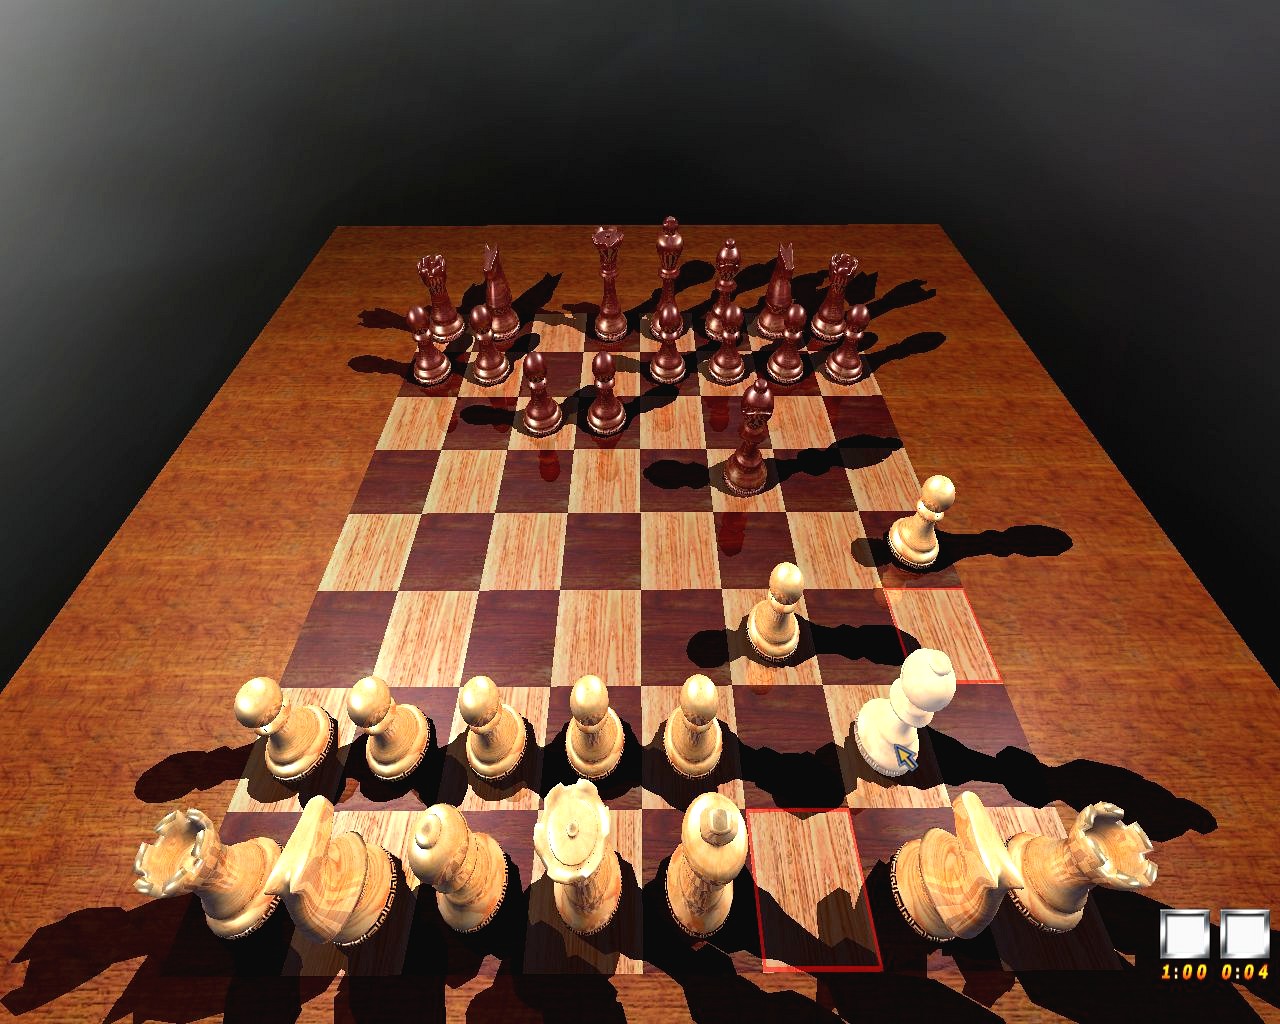 3D Chess Online